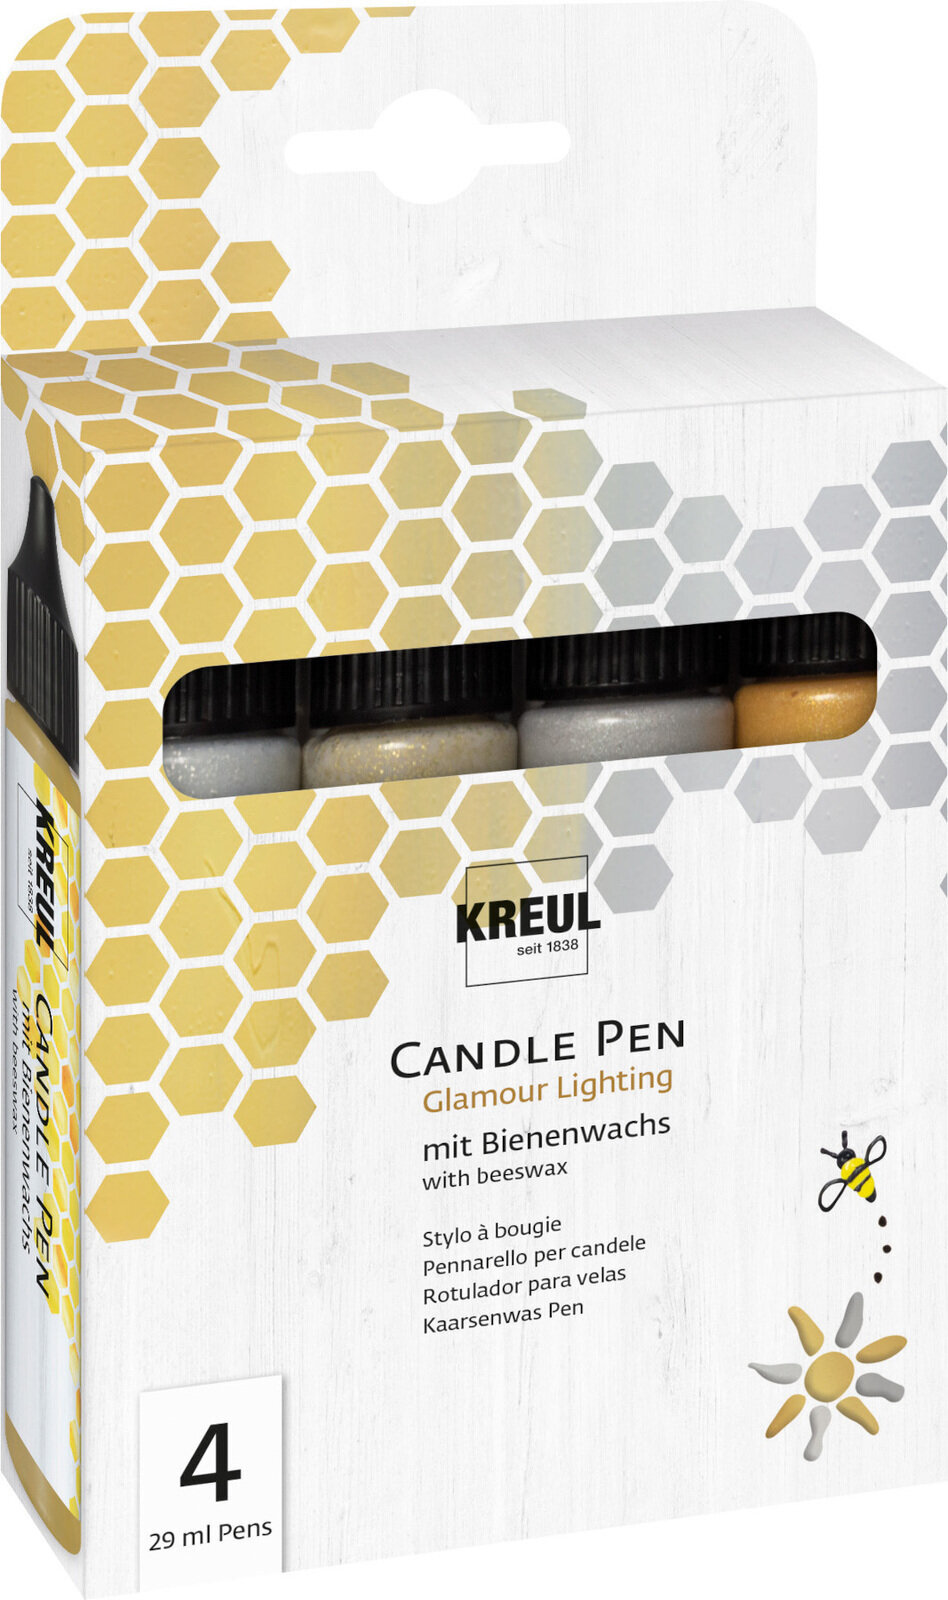 Filtpen Kreul Candle Pen Glamour Lighting Set